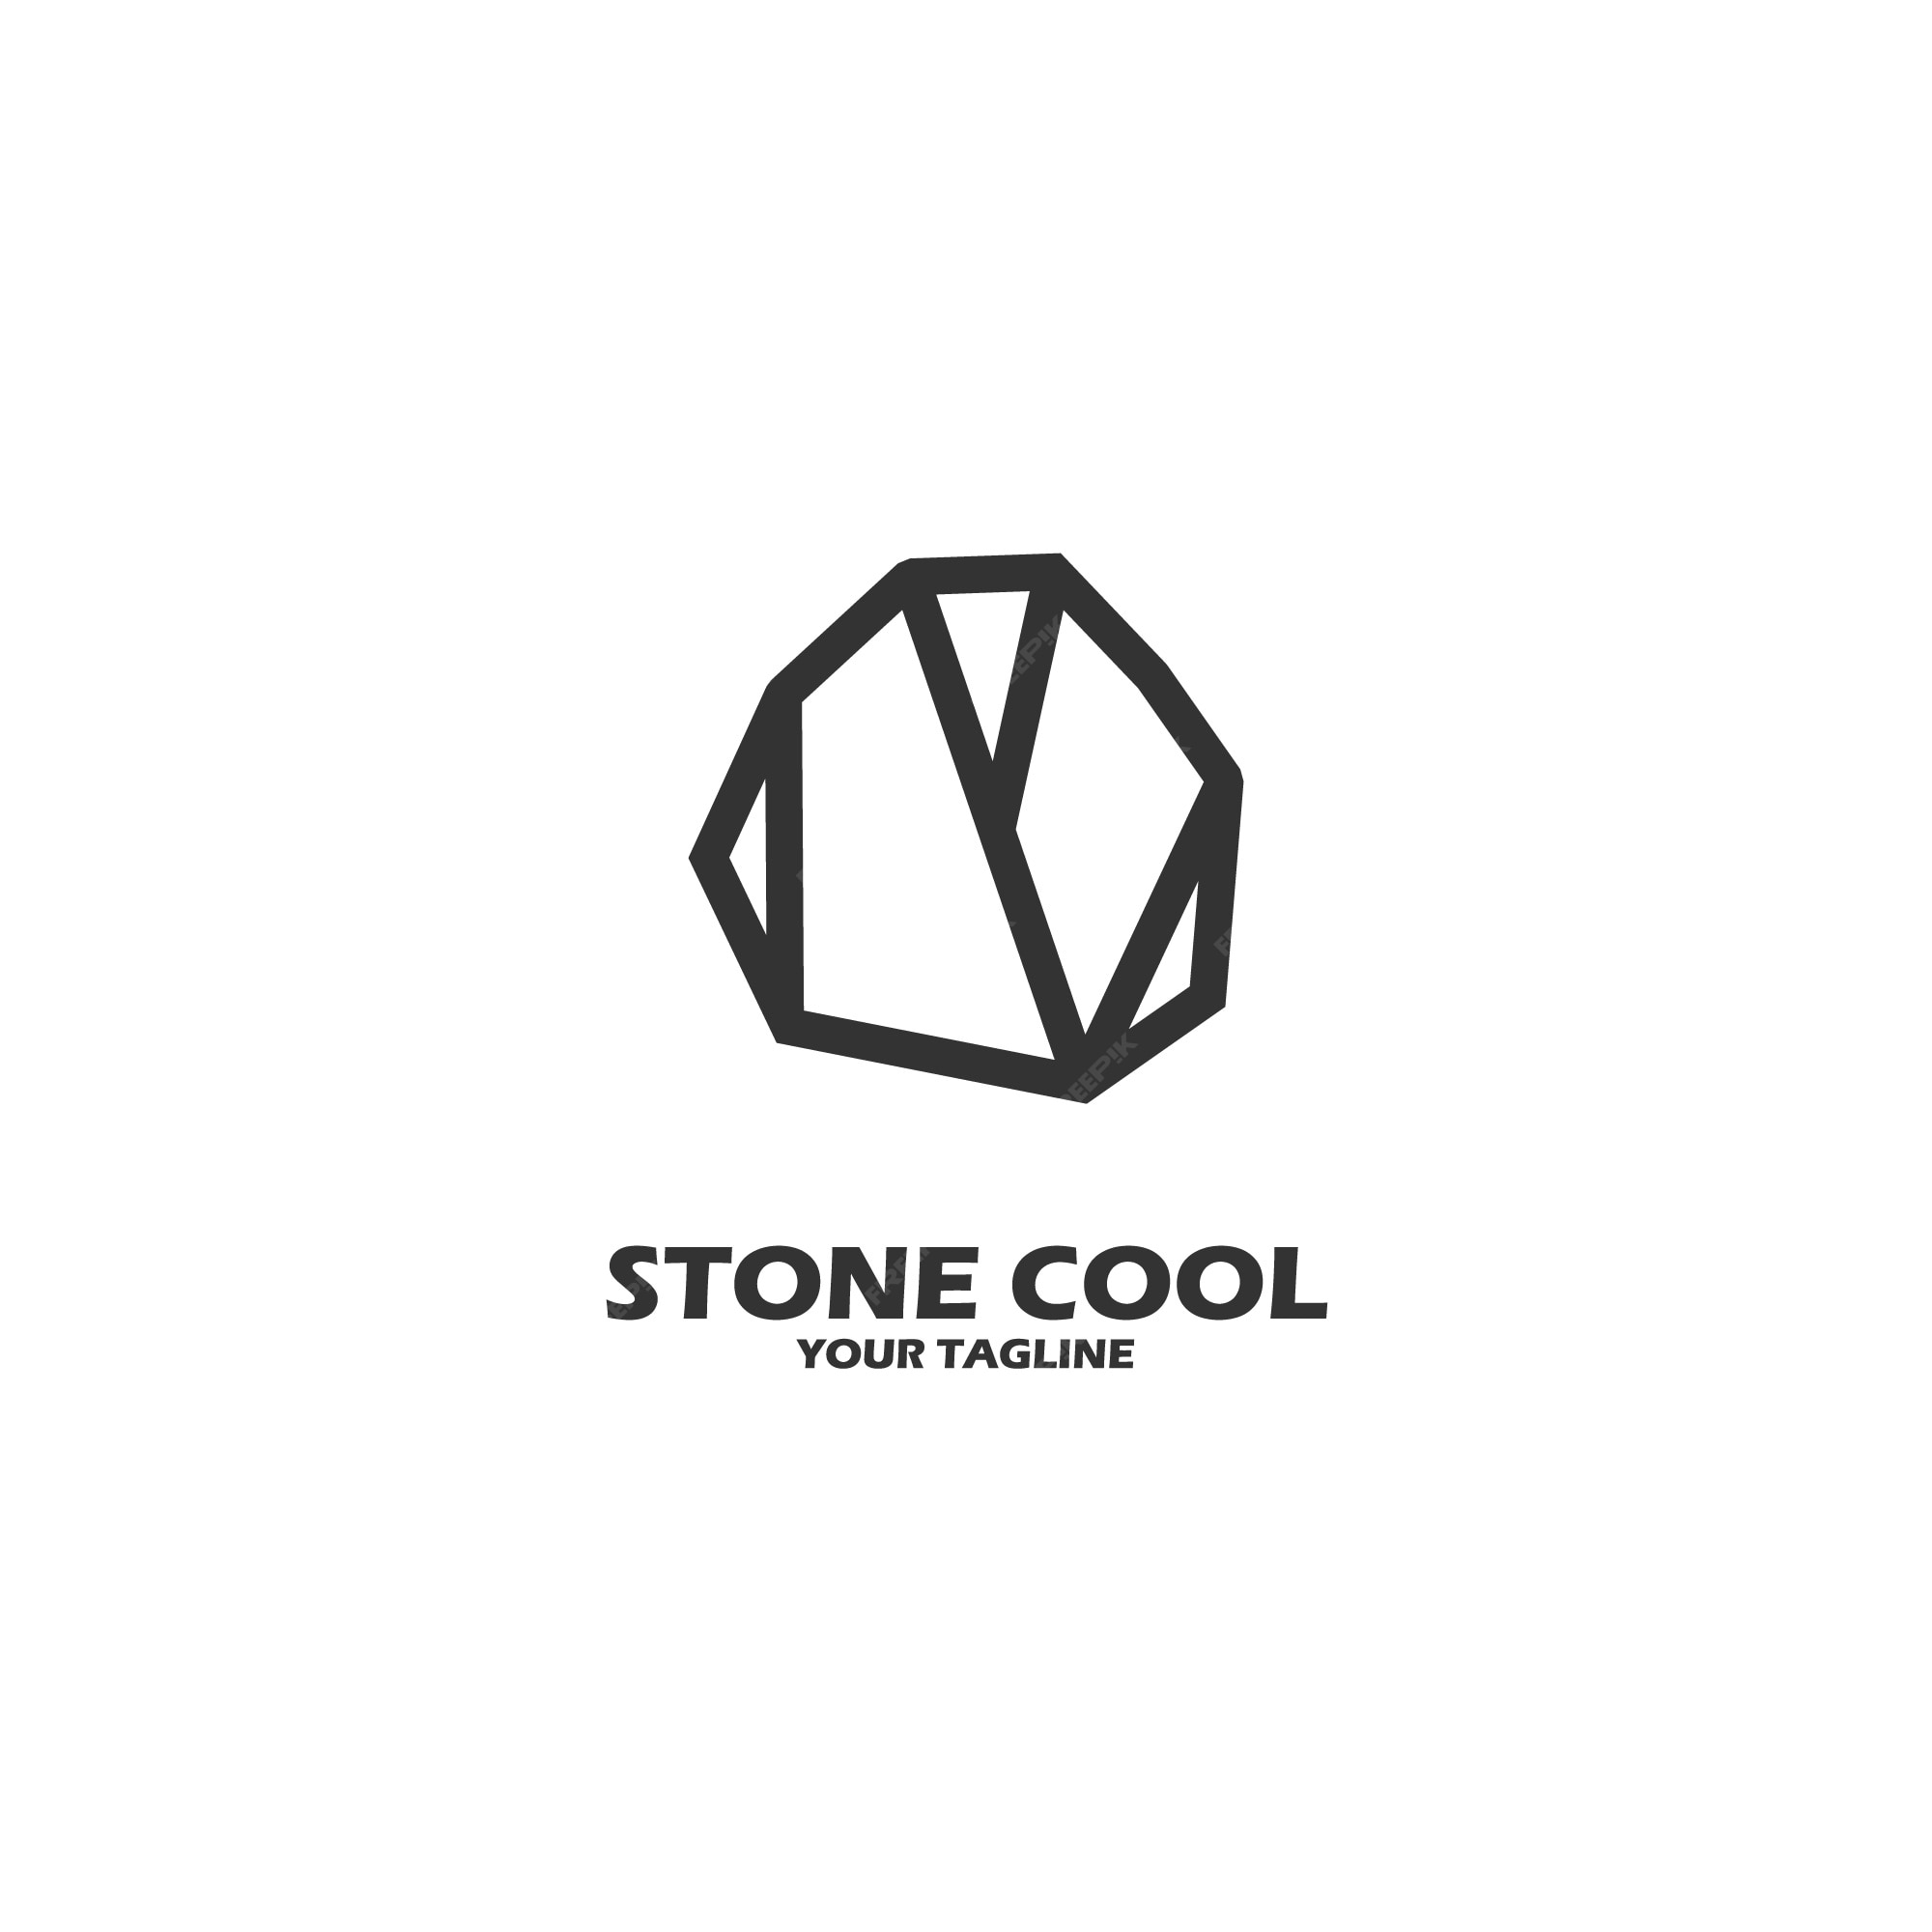 Камень лого. Логотип Stone. Логотип из камня. Искусственный камень логотип.